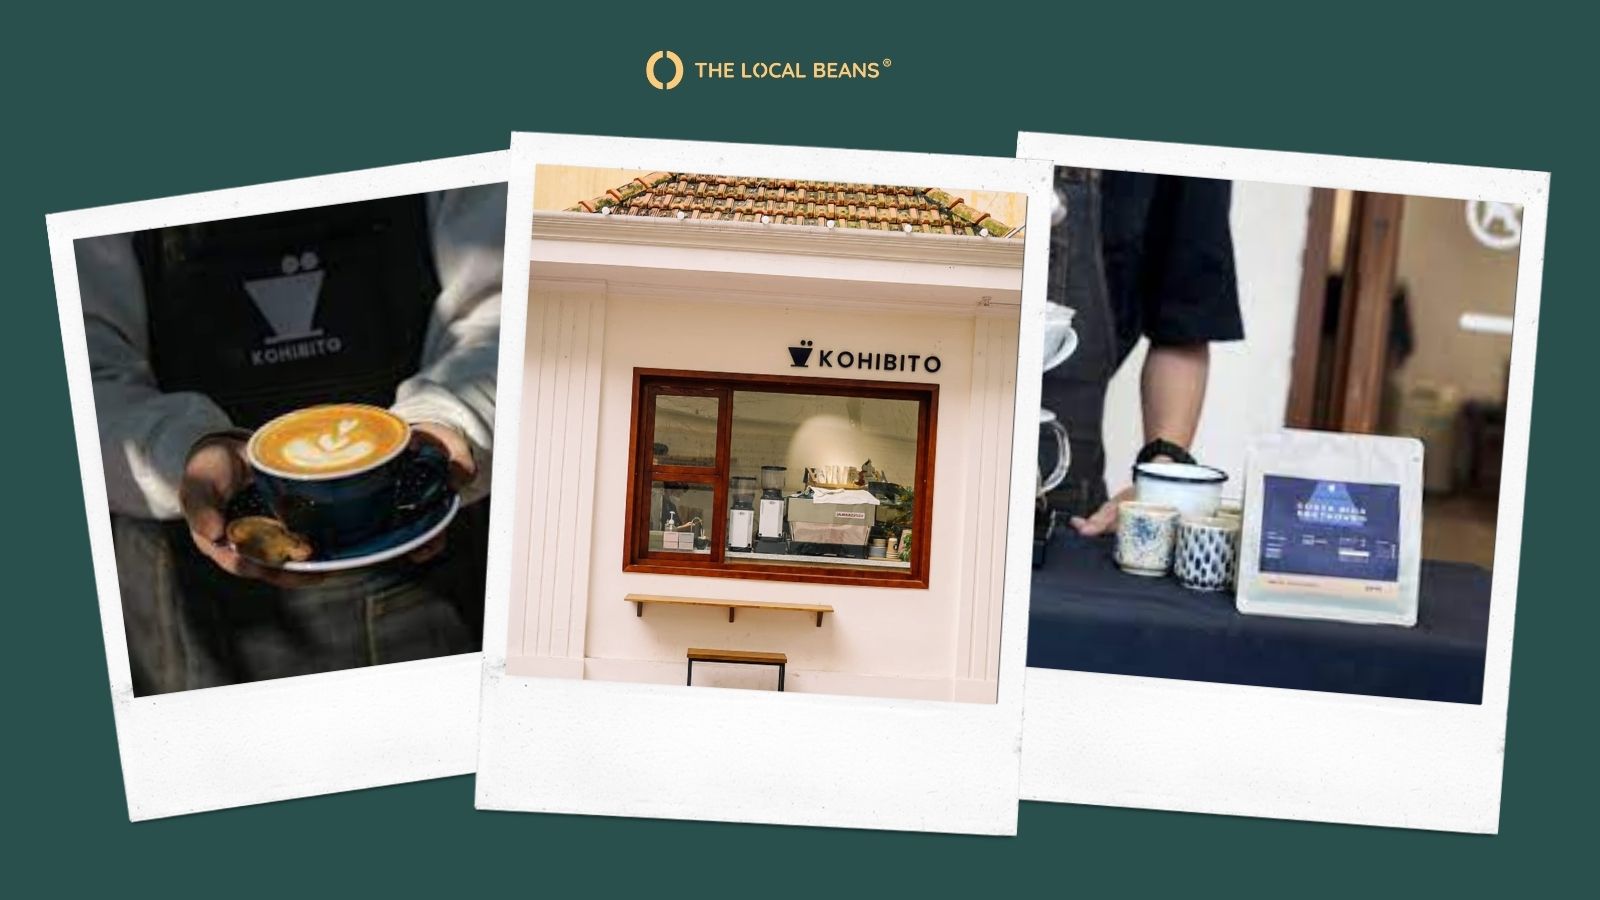 Hình ảnh ly cà phê, quầy take-away và gói cà phê nguyên hạt của quán Kohibito